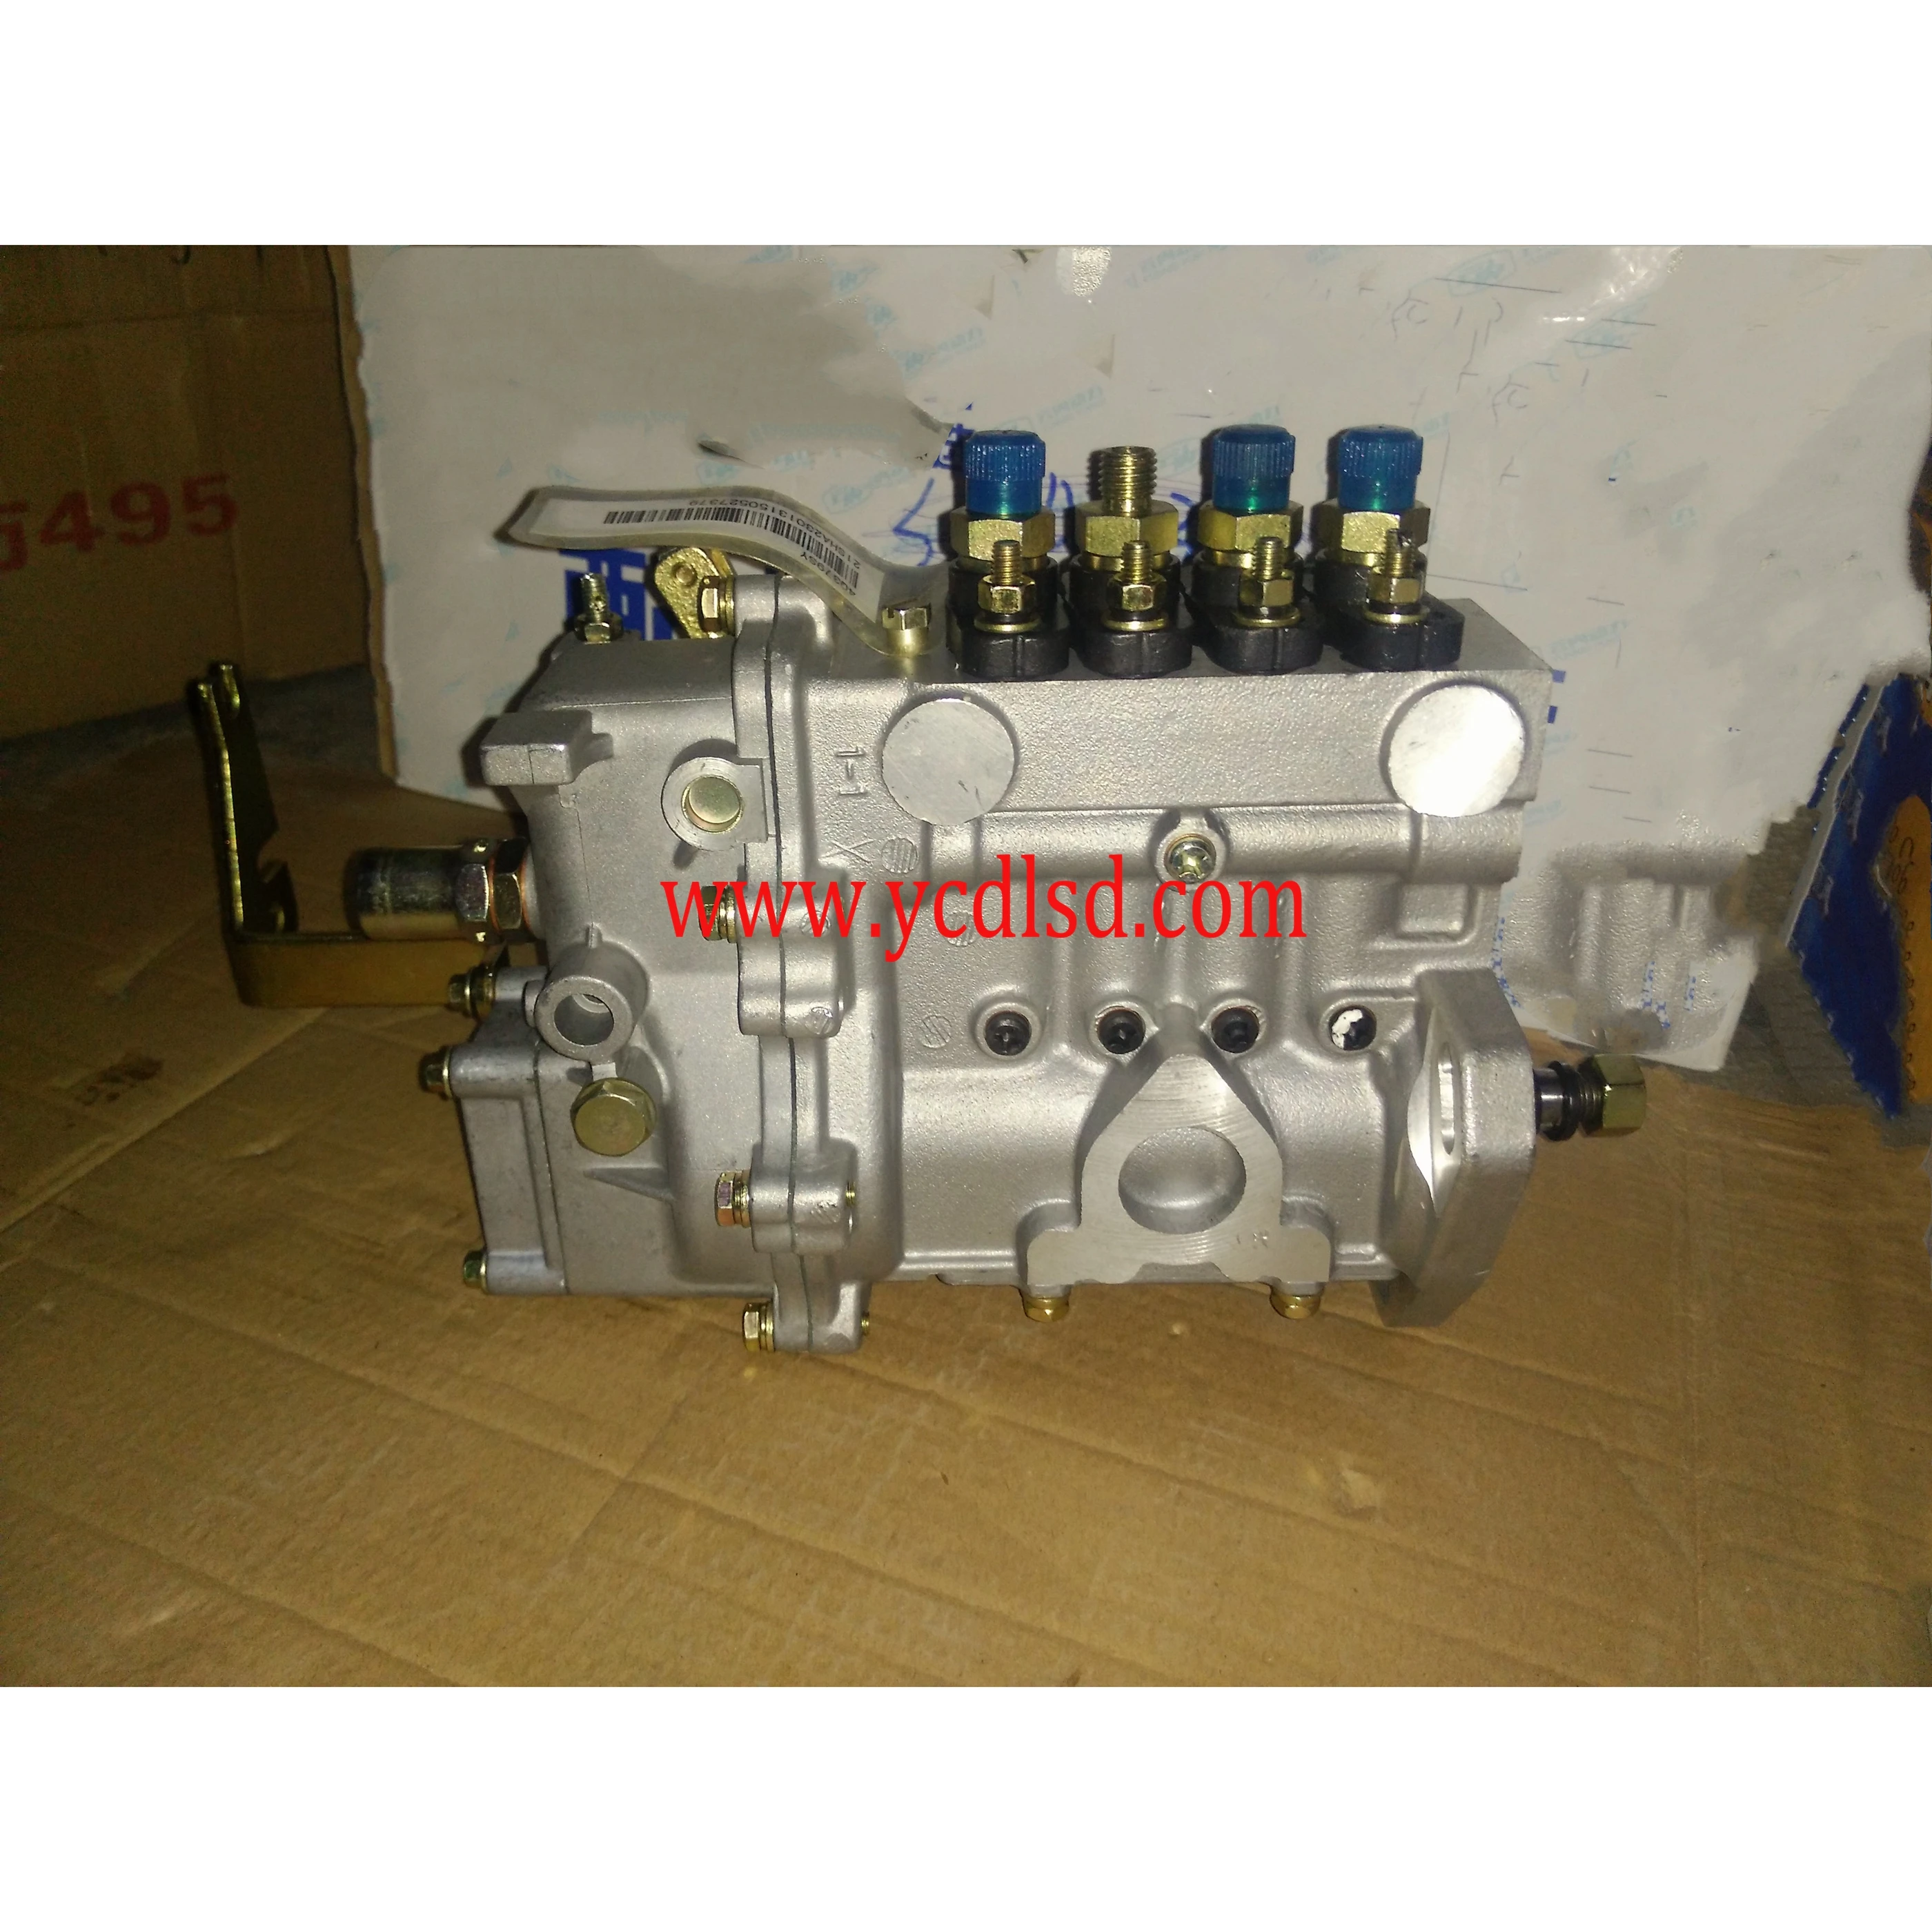 Source 注射泵YN27 BH4Q80R8 SD1-SHA23013 4Q379SY 1200 on m.alibaba.com